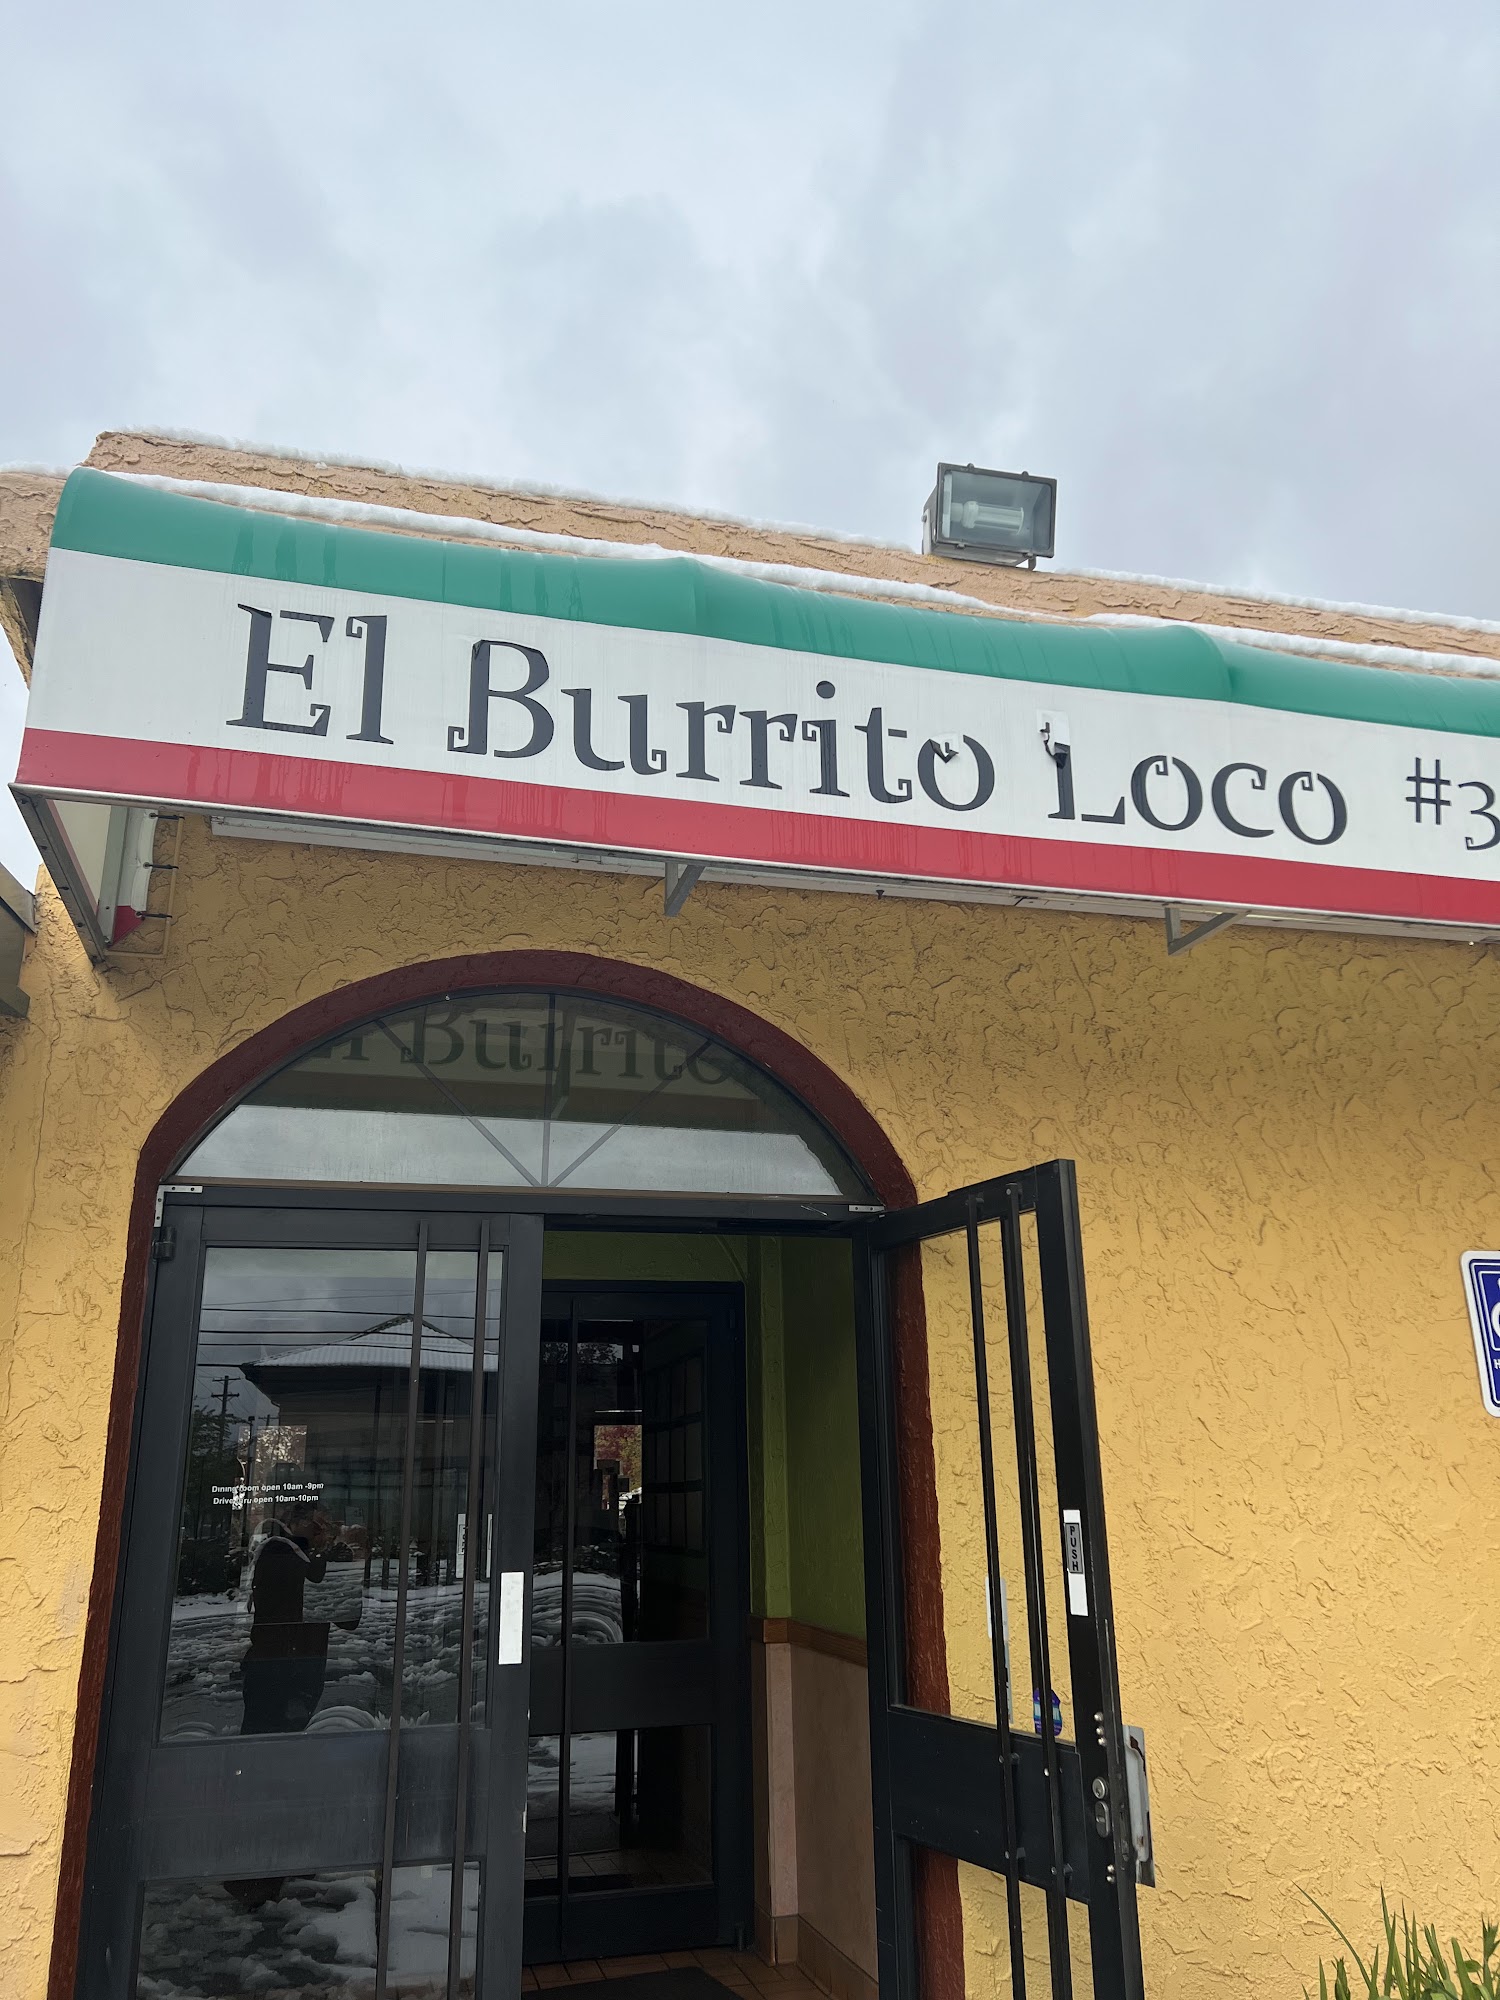 El Burrito Loco # 3